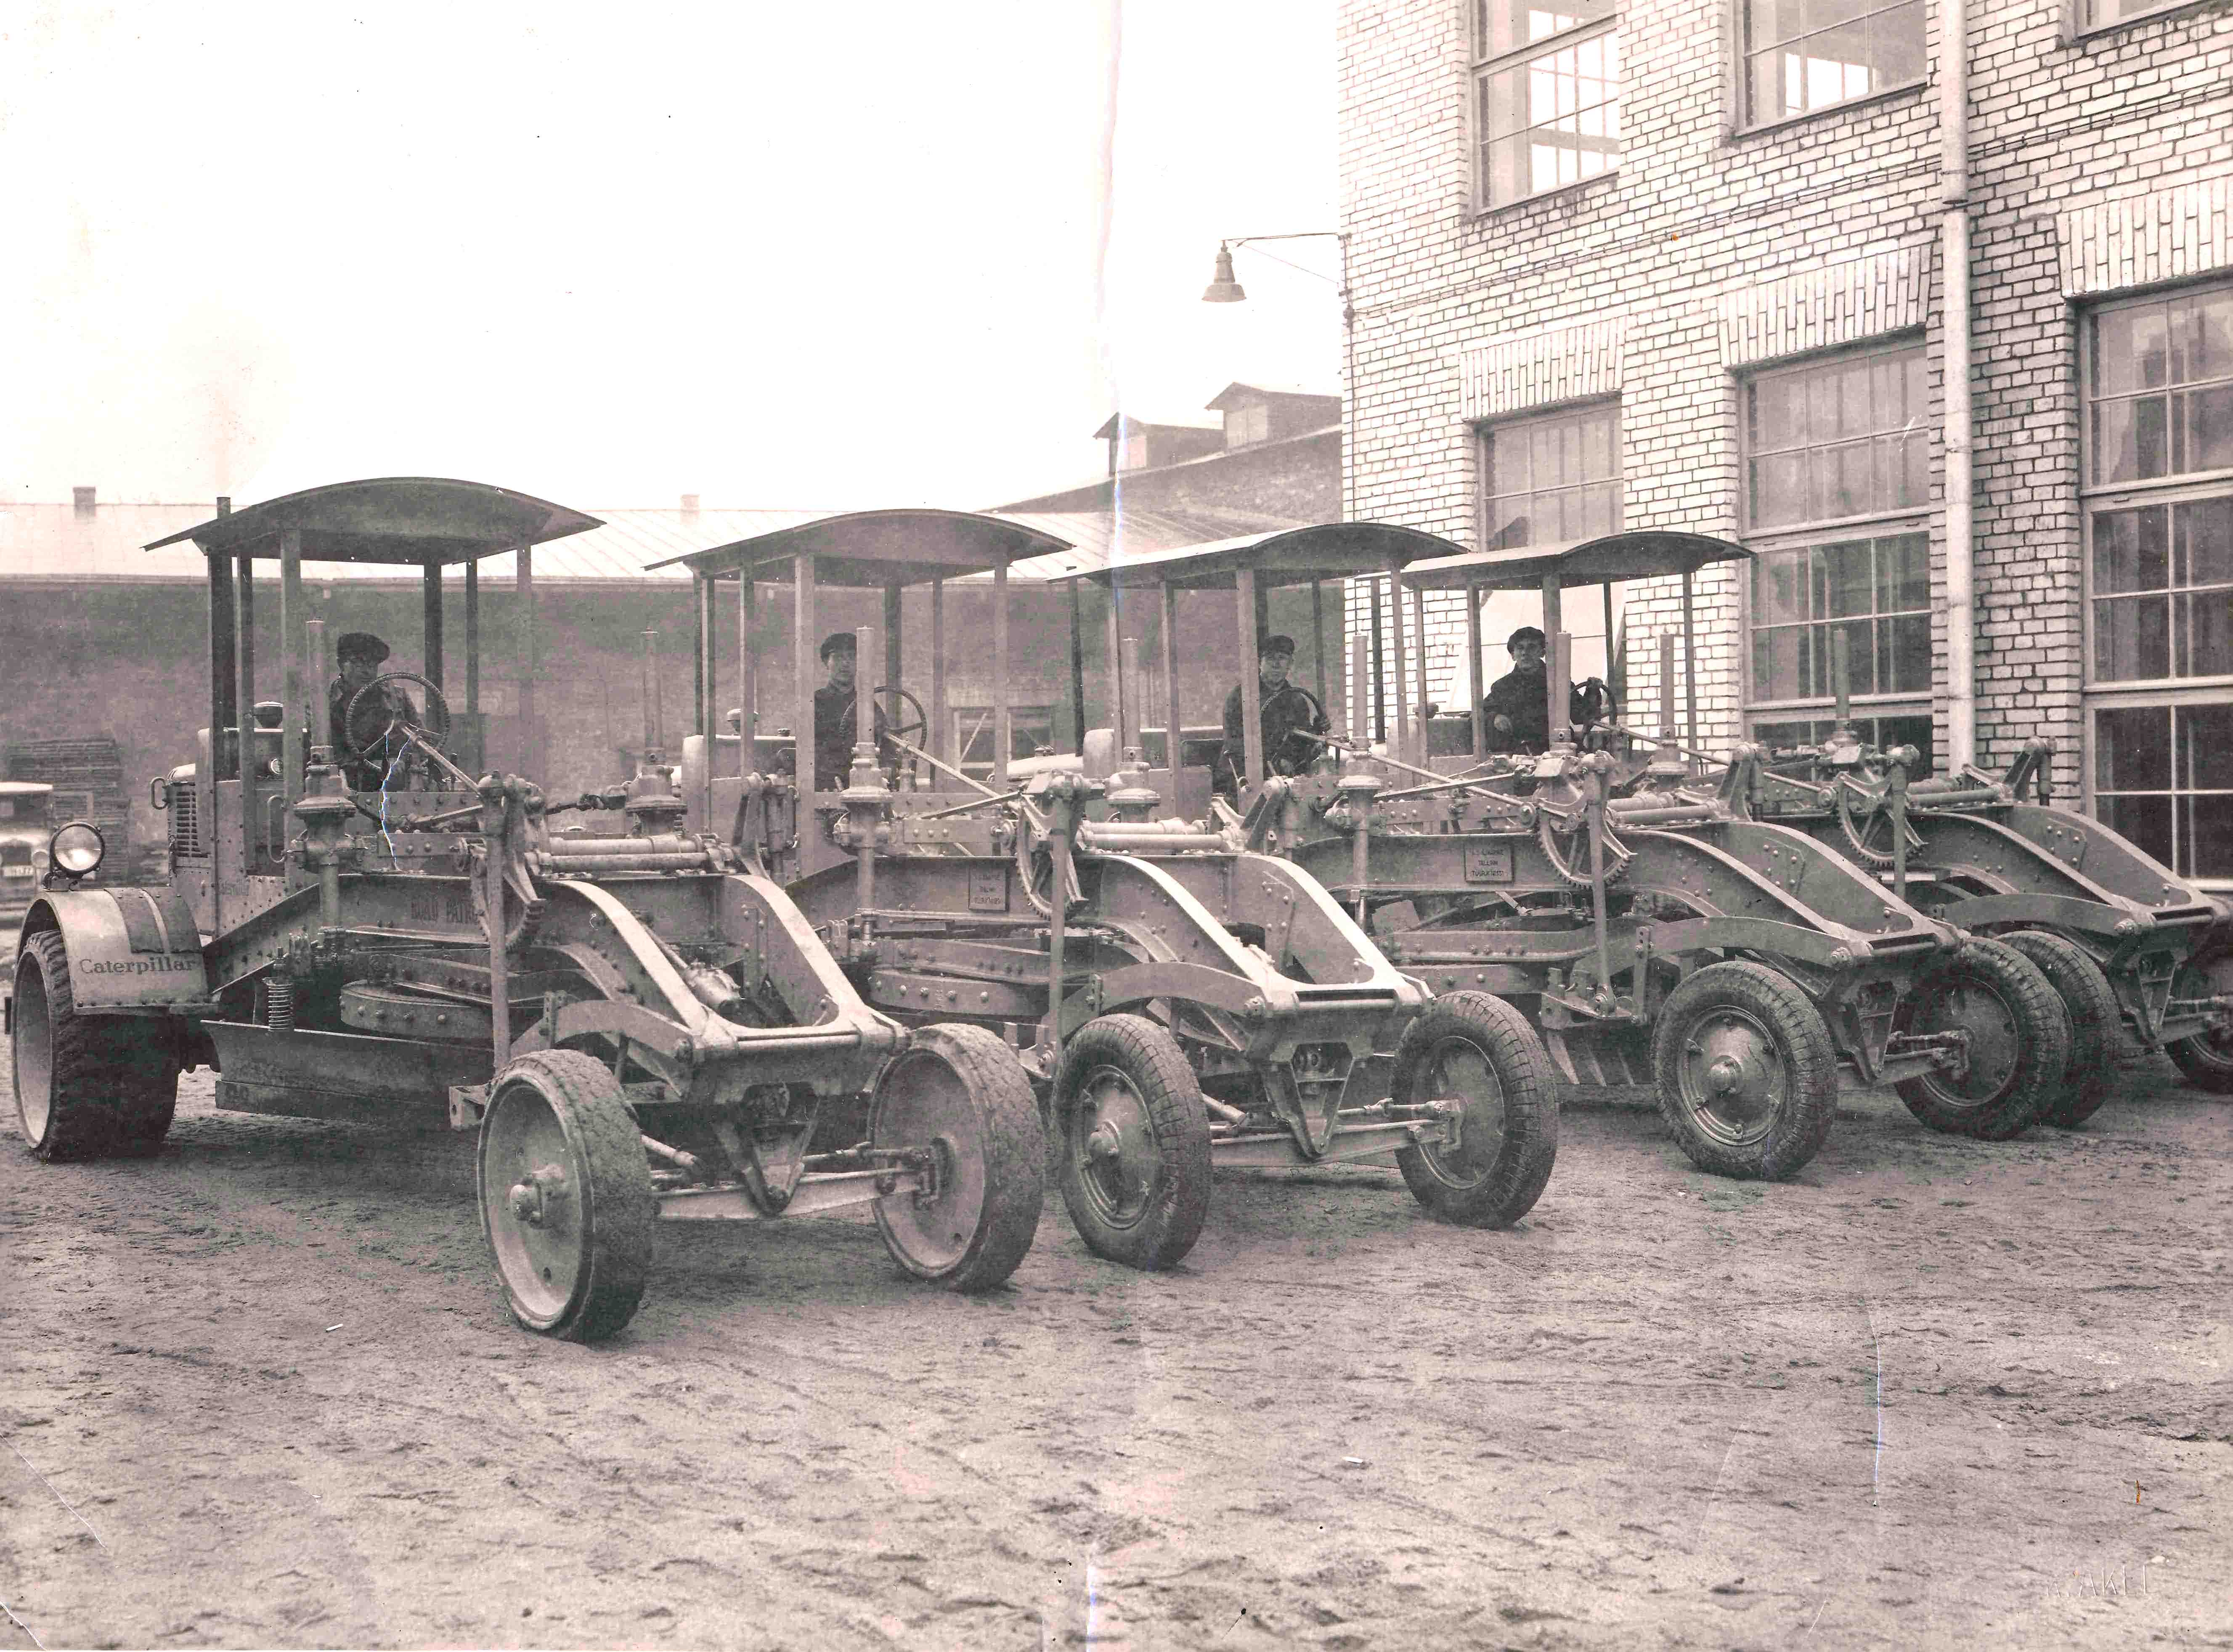 1939. aasta mais sõlmis teedeministeerium AS Ilmarisega lepingu, mille järgi töövõtja valmistas 6 komplekti teehöövleid, mille tüübiks oli Caterpillar Diesel Nr 10. Need masinad olid varustatud 44 hj Caterpillari diiselmootoriga ja käivitamiseks vajaliku 10 hj abibensiinimootoriga. 